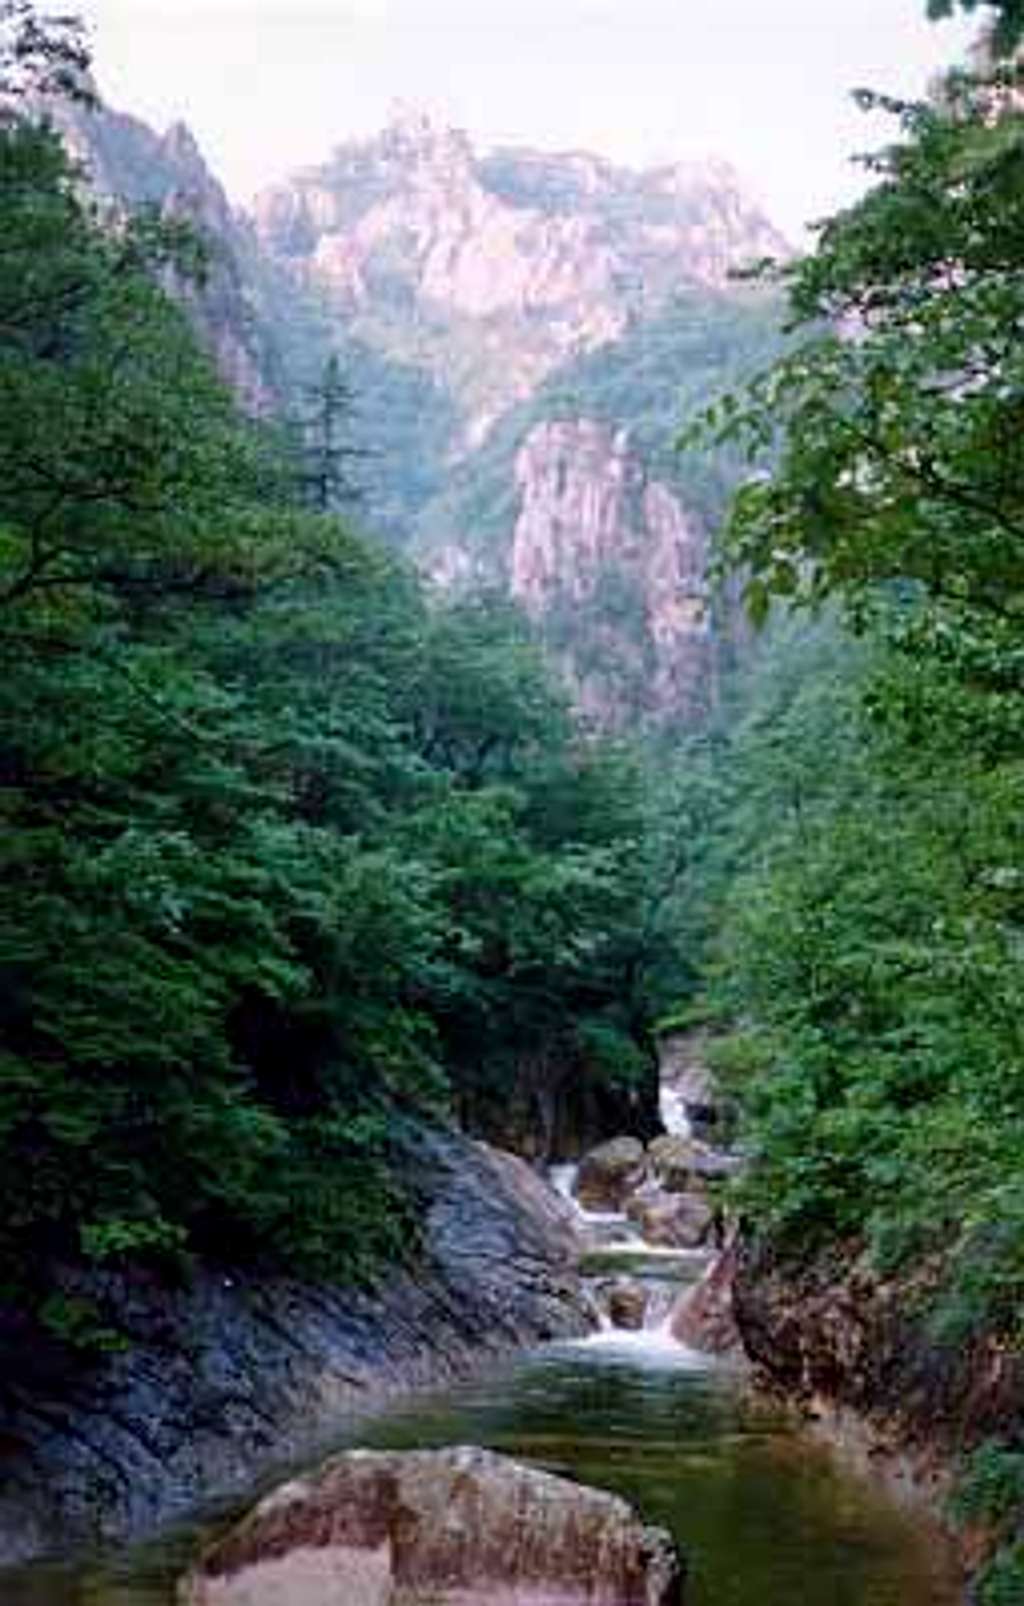 Soraksan National Park